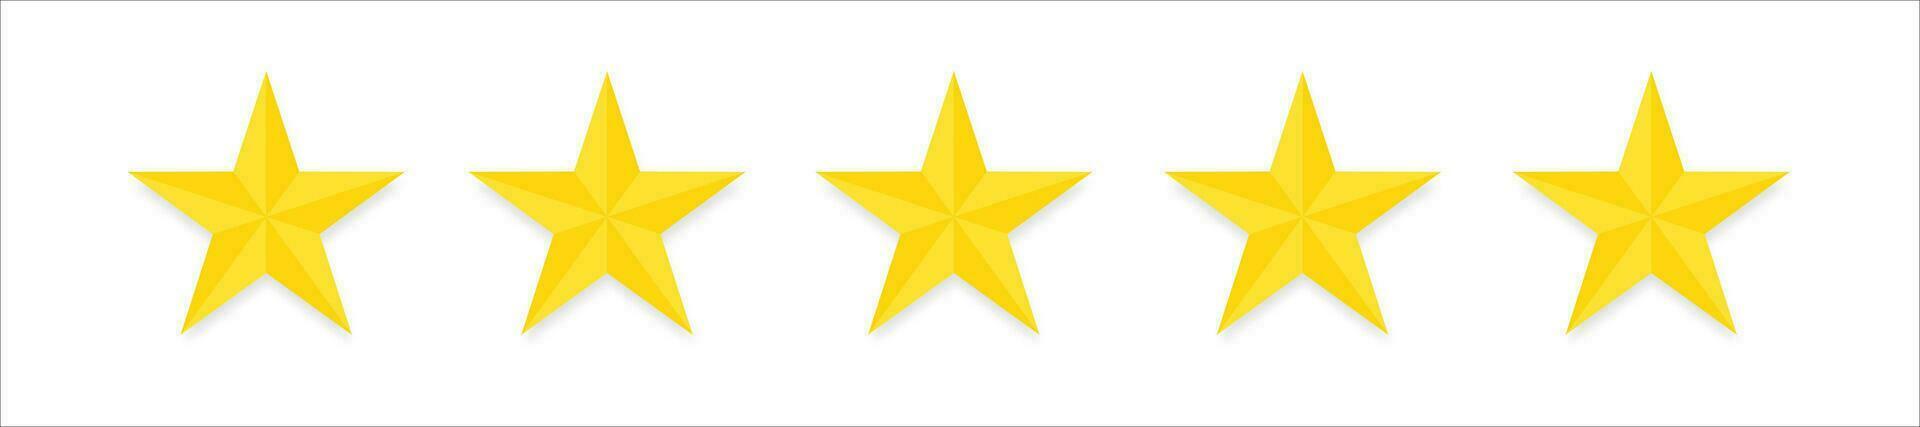 5 estrela. Estrela ícone placa. cinco estrelas cliente produtos Avaliação Reveja plano ícone para apps e sites vetor